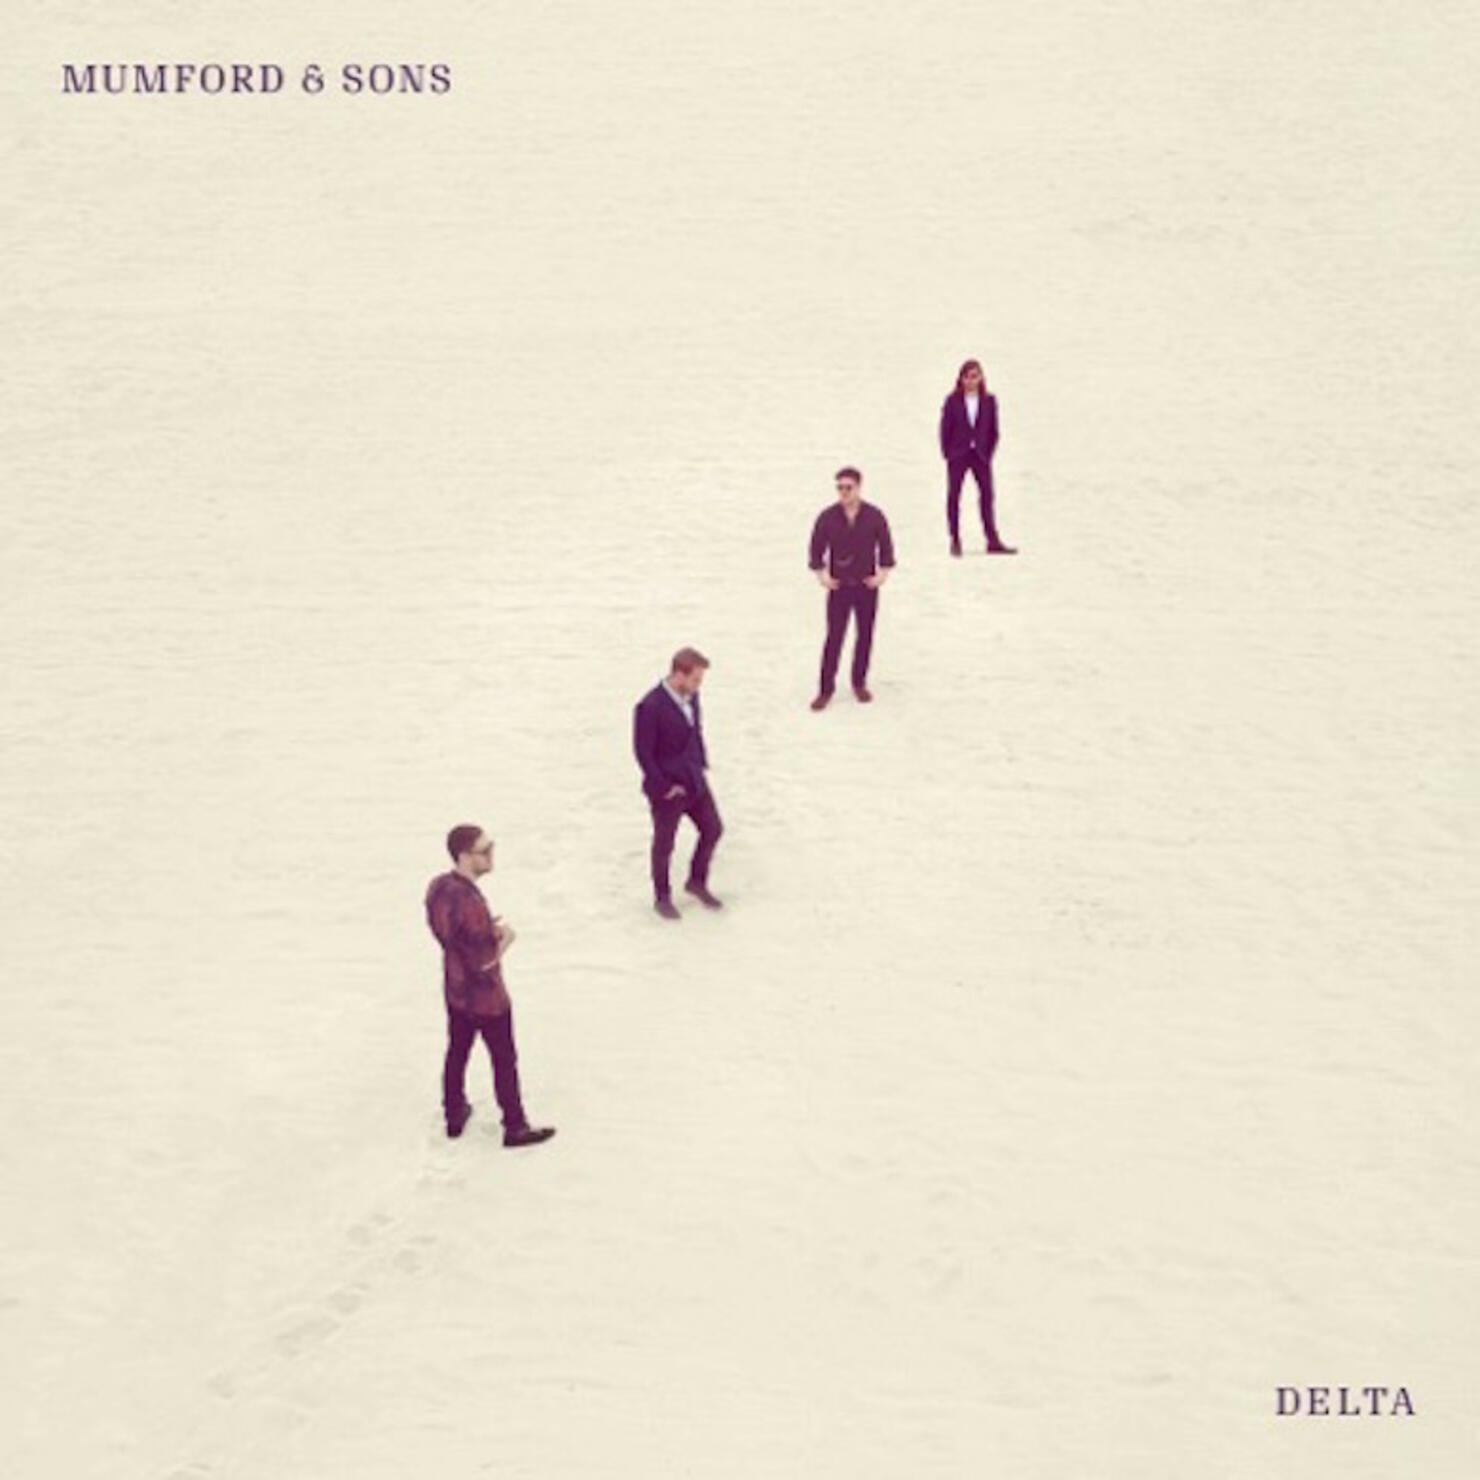 Mumford & Sons - 'Delta' Album Cover Art